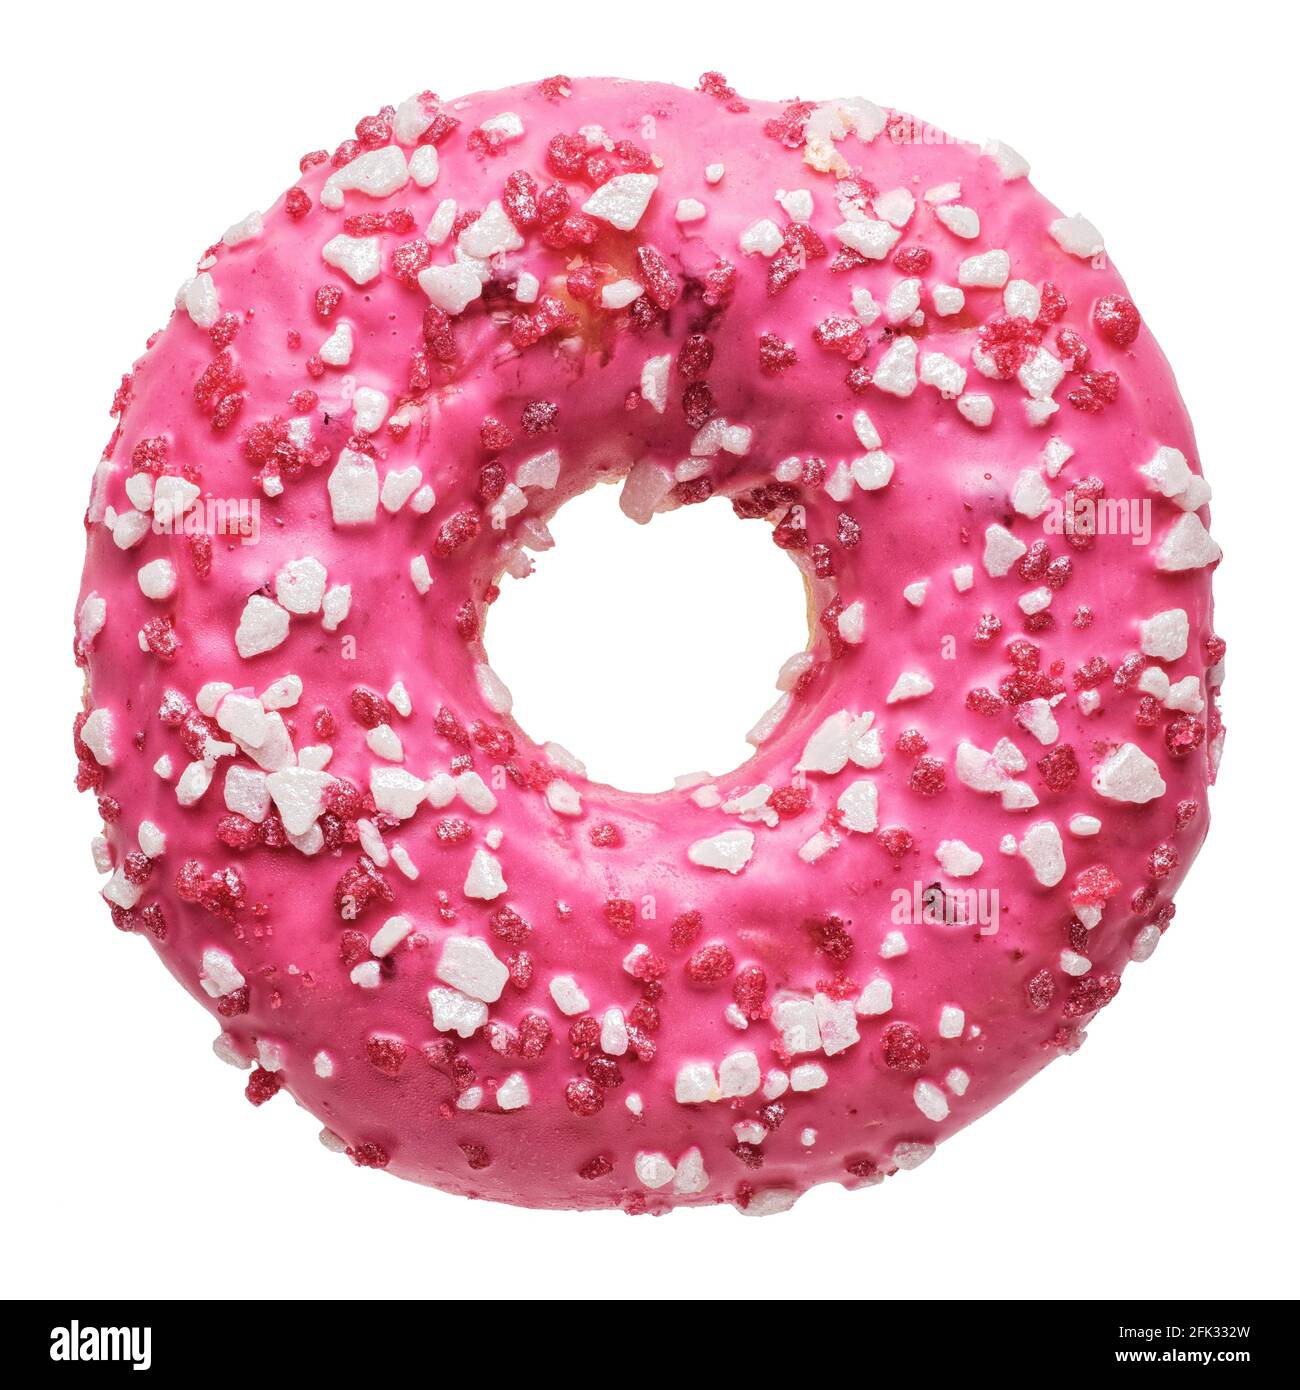 Objets isolés : un seul donut de fraise rose frais, sur fond blanc Banque D'Images